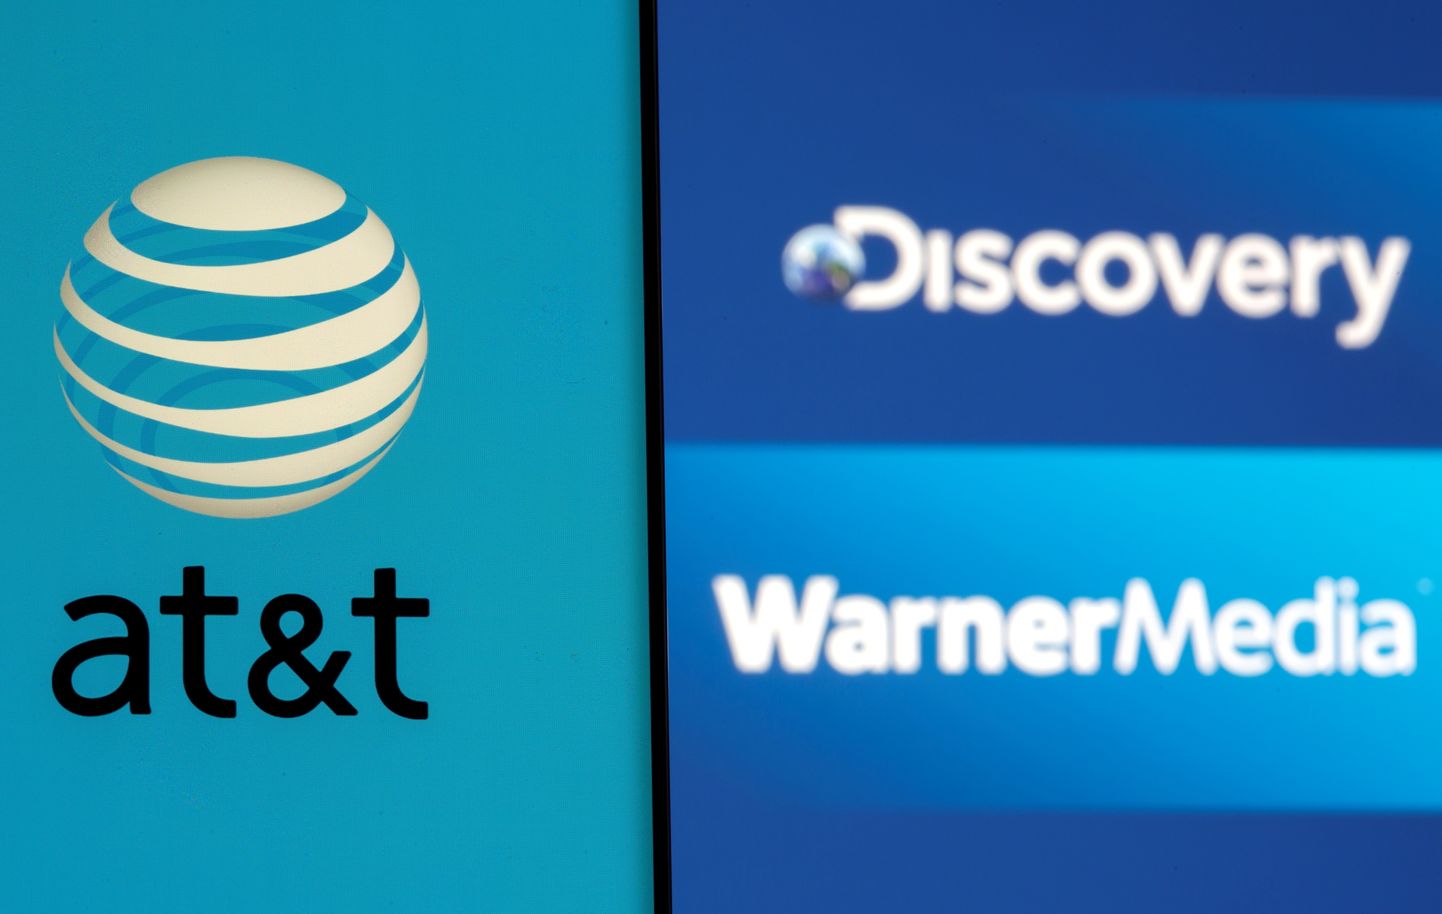 Lõppeva aasta suurimaks väljakuulutatud tehinguks on Dicovery ning AT&T meediaüksuse Warner Media ühinemine.